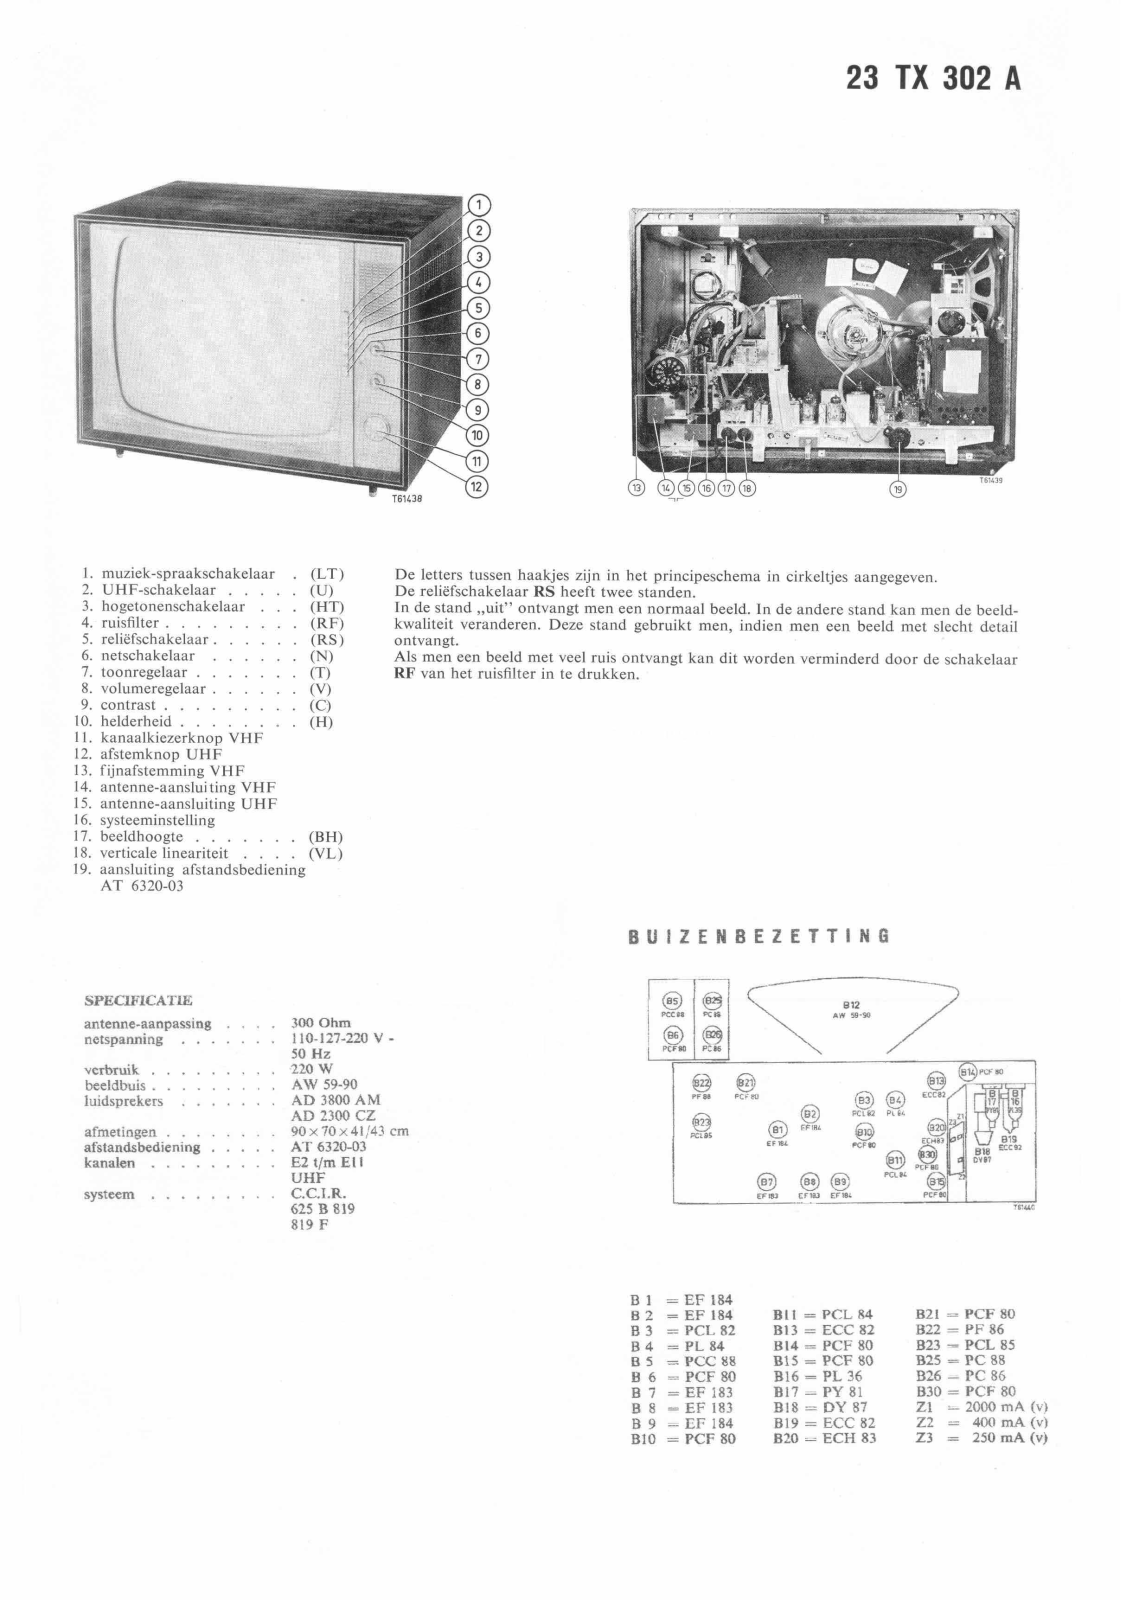 Philips 23TX302A Schematic